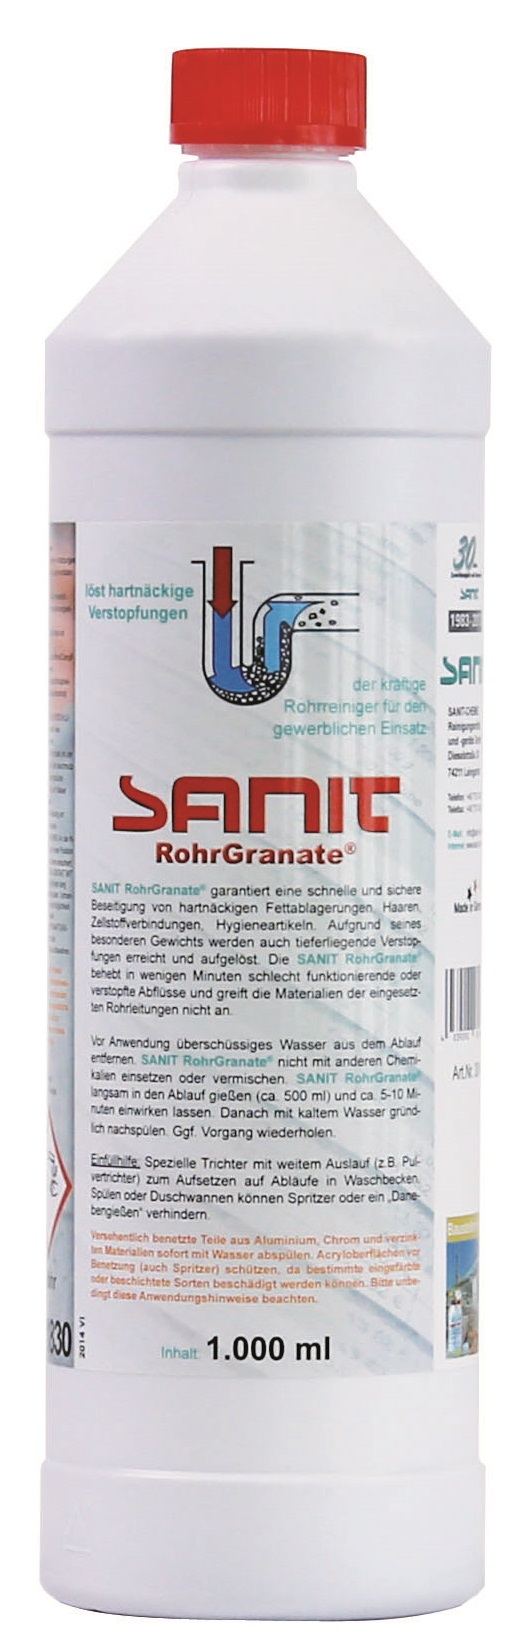 SANIT Profi Rohr Granate Rohrreiniger-Konzentrat